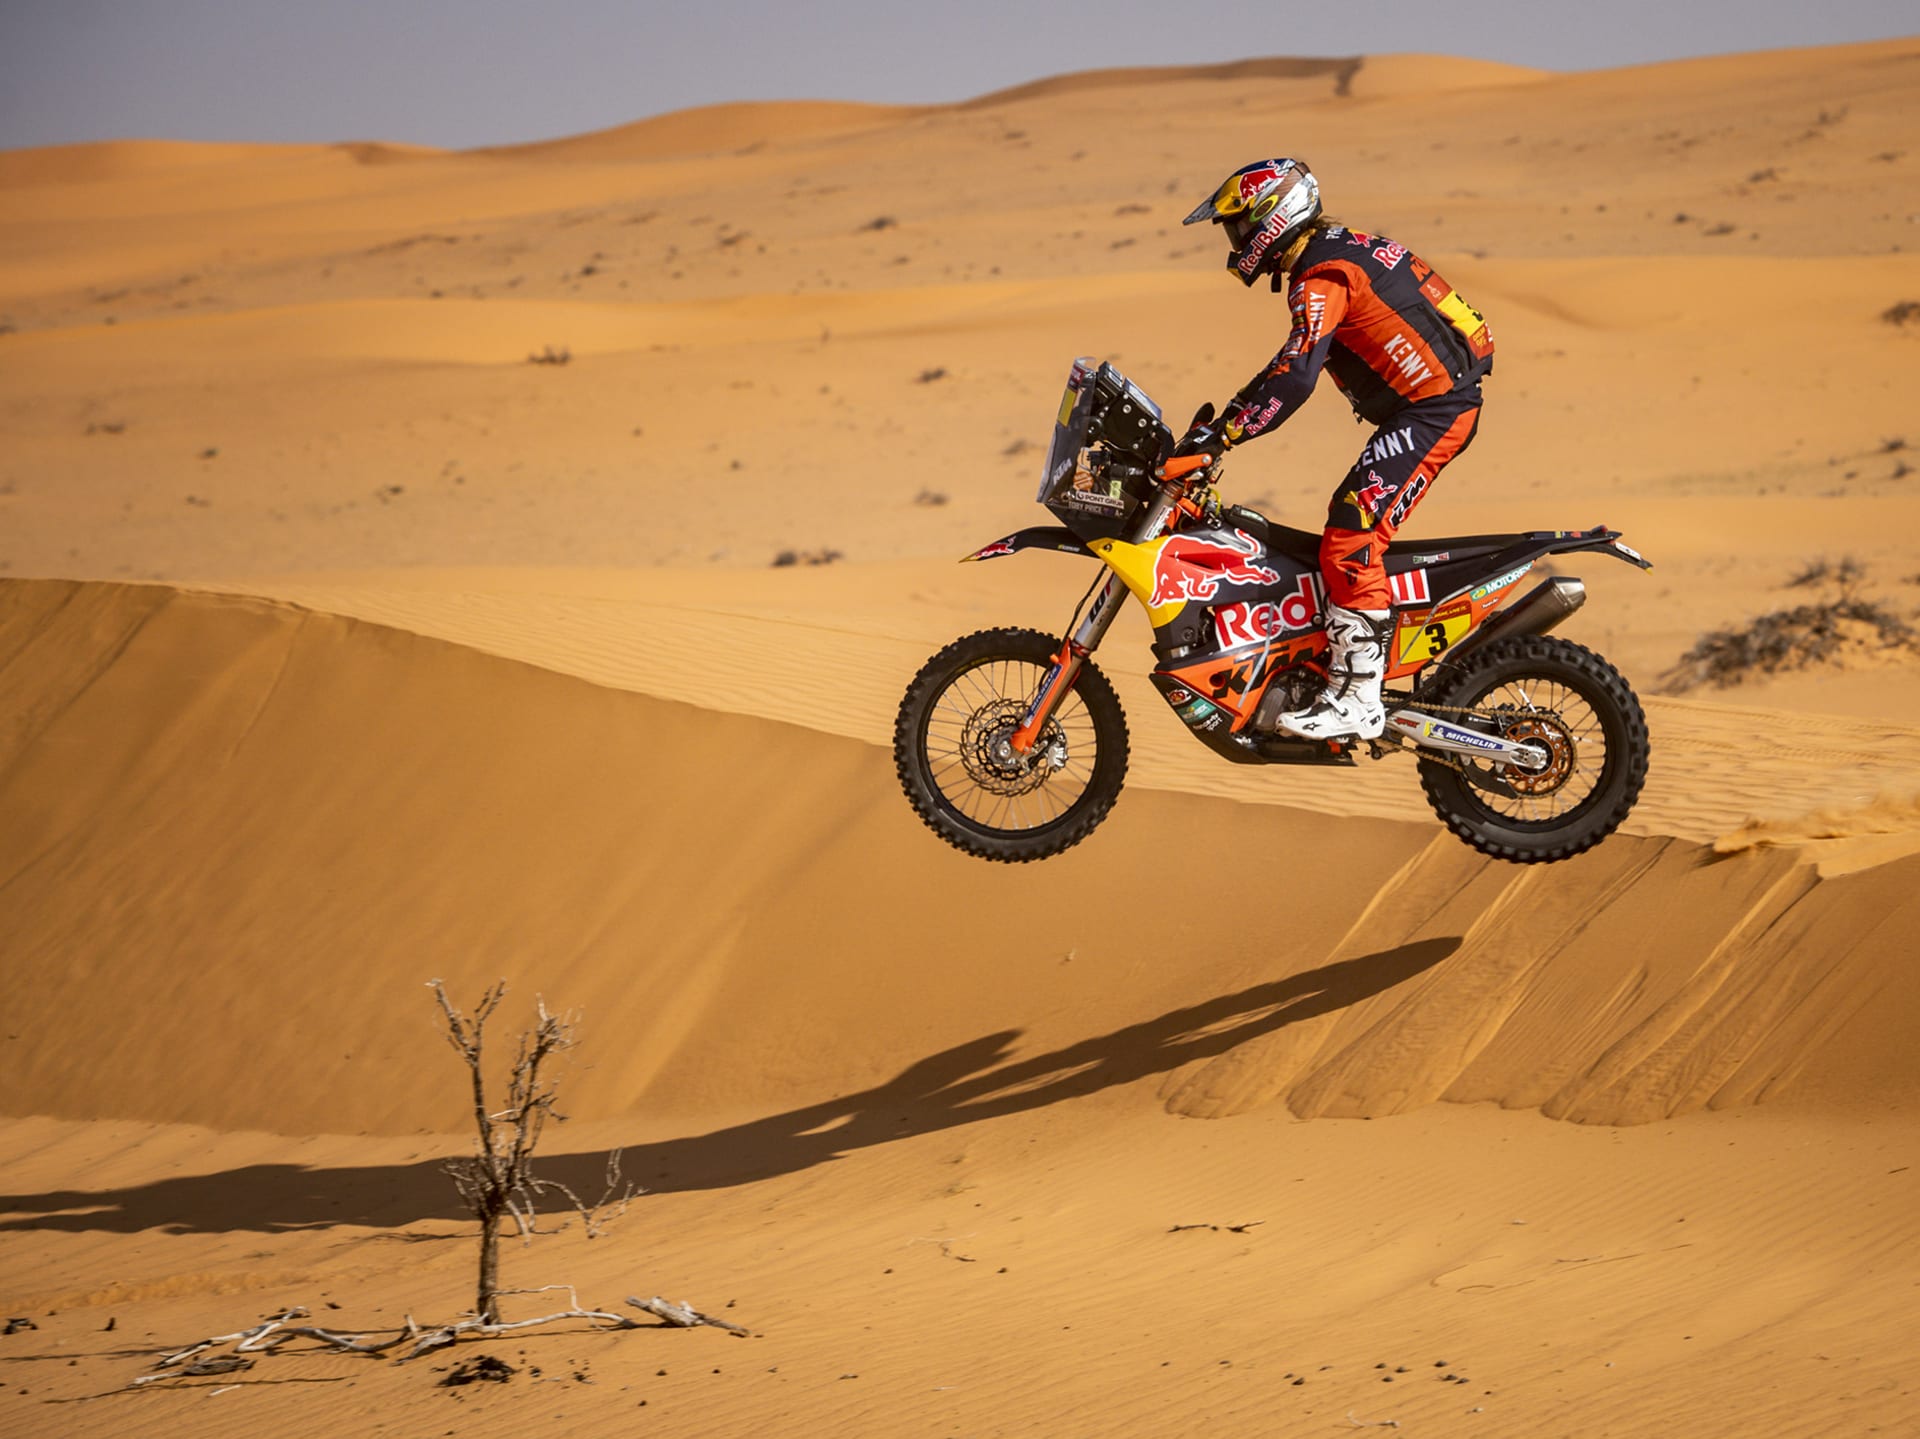 „Podívejte se na Tobyho Price, Australana, který vyhrál Dakar dvakrát. Má neskutečné fyzické parametry, jinak by 200 kilo vážící motorku nekočíroval.“